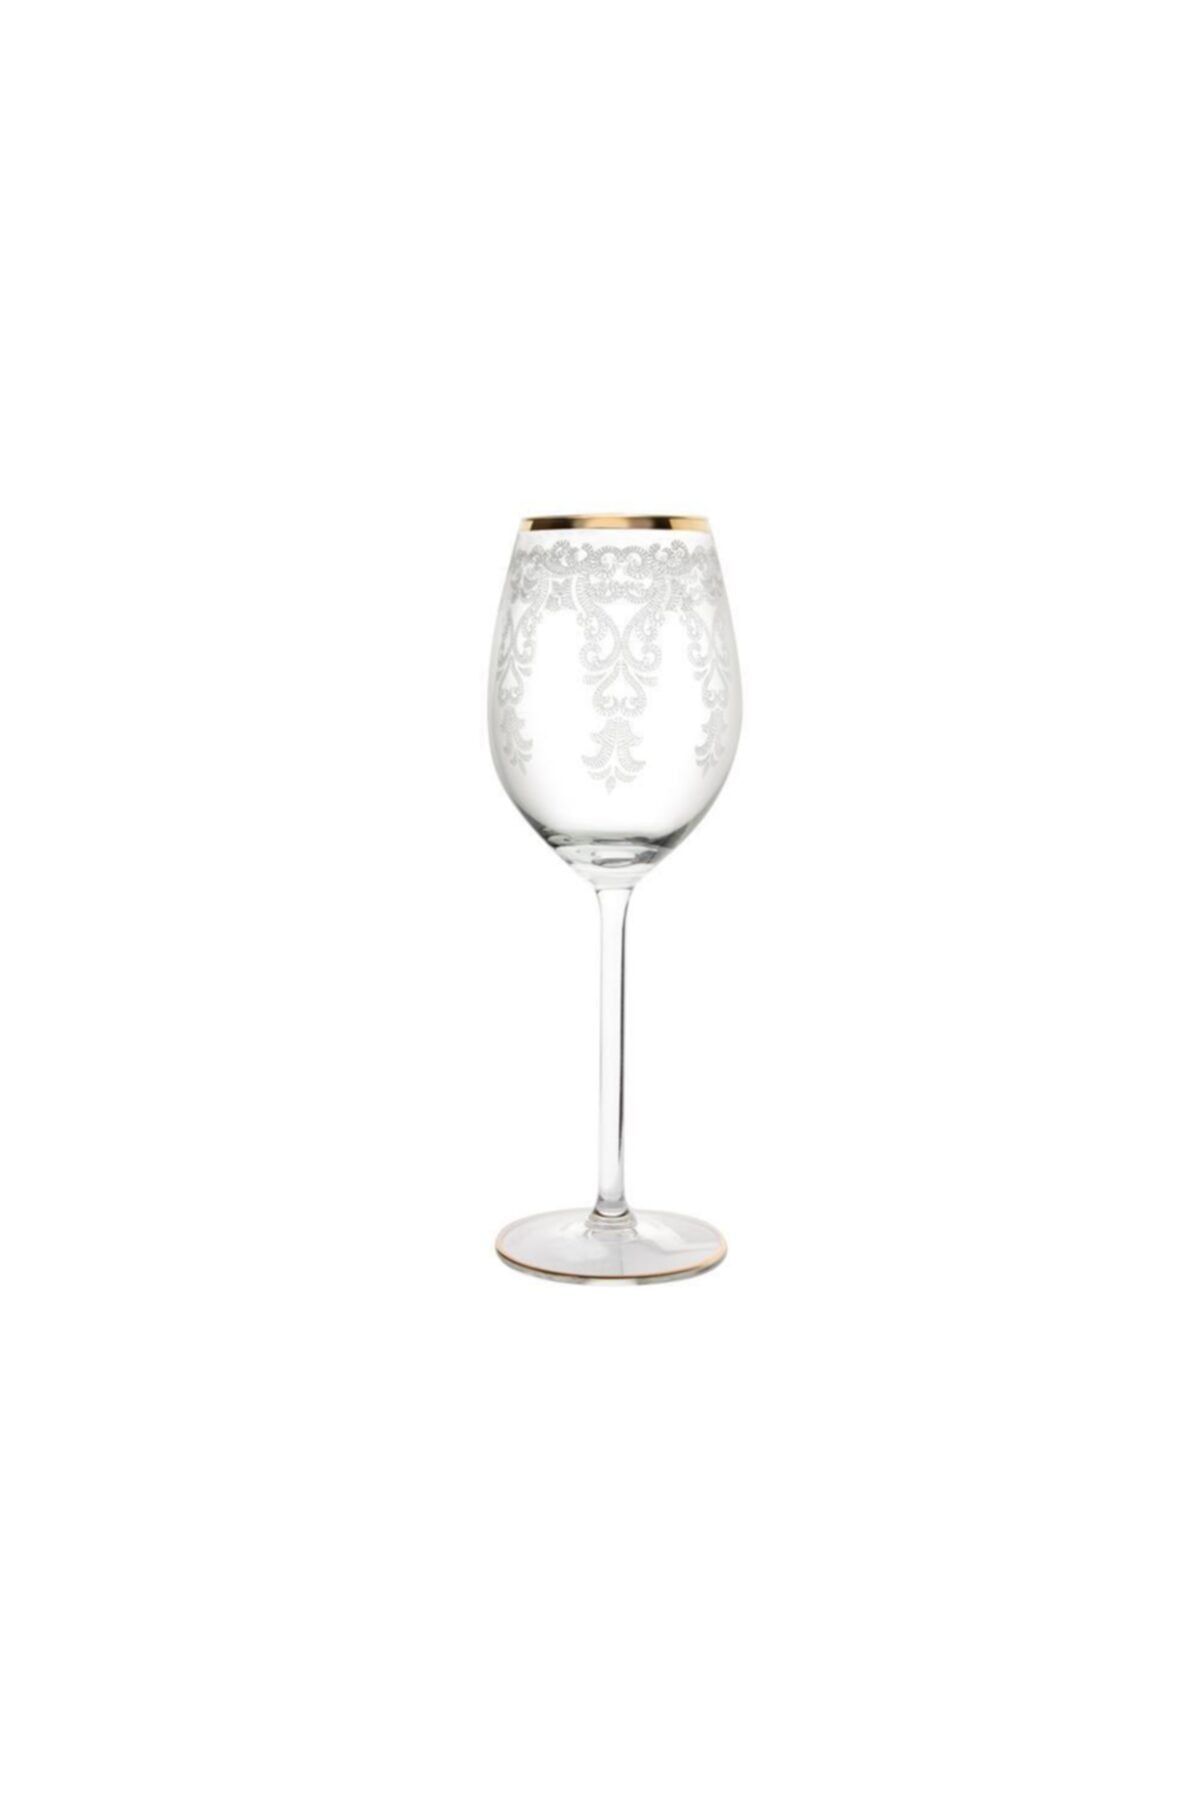 Porland Gild Altın Beyaz Şarap Bardağı 310cc